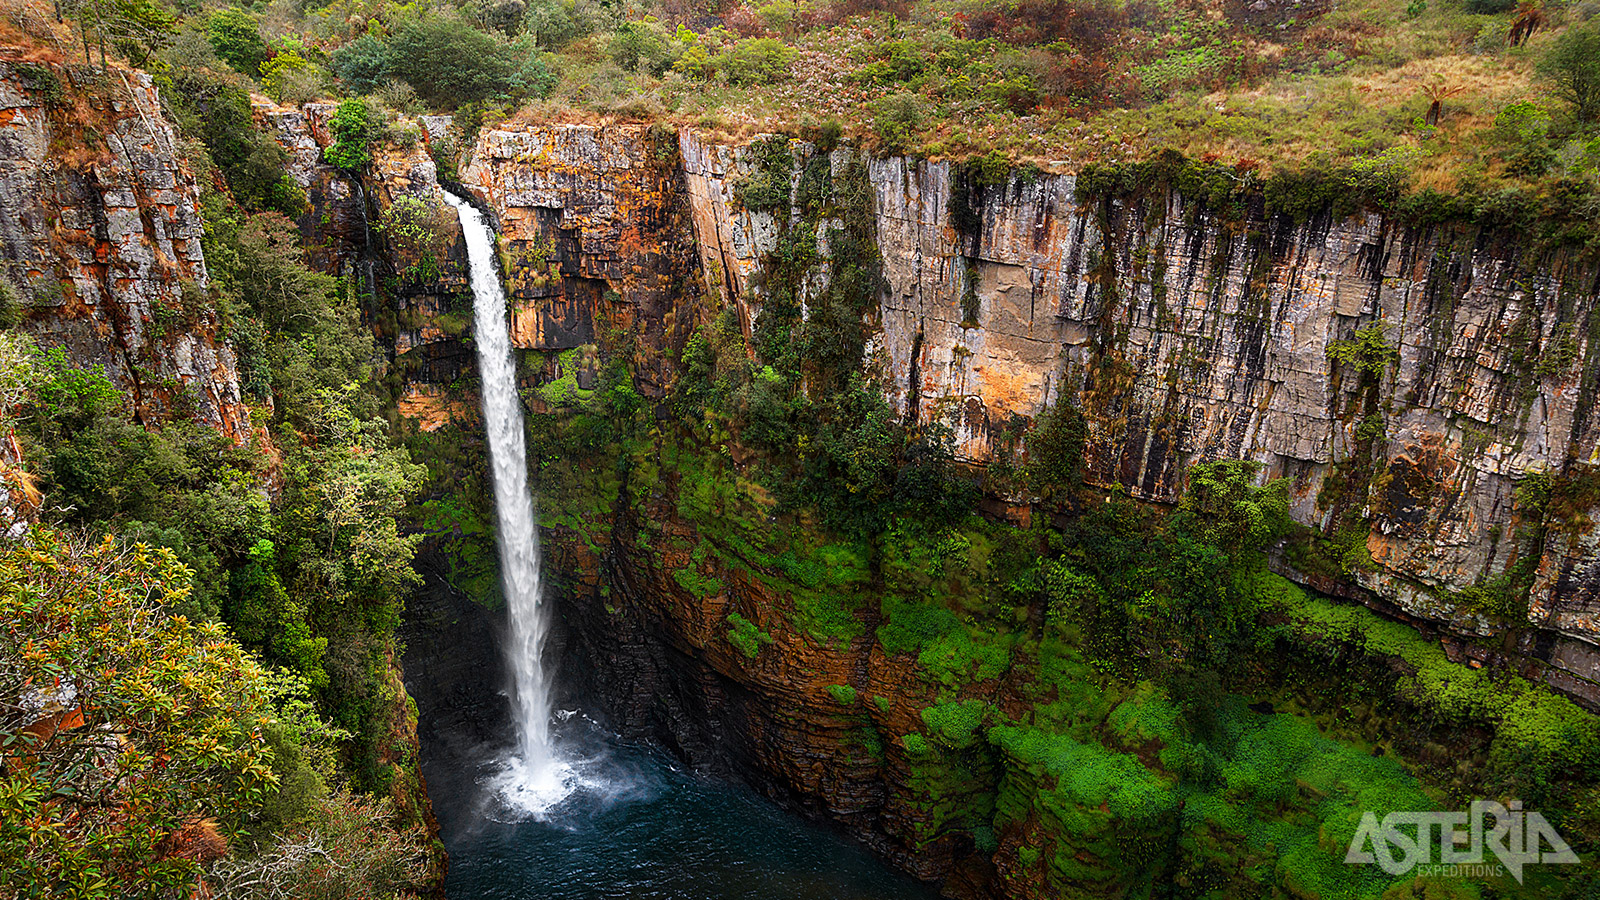 De 65m hoge Mac Mac watervallen zijn de op één na hoogste watervallen van Zuid-Afrika